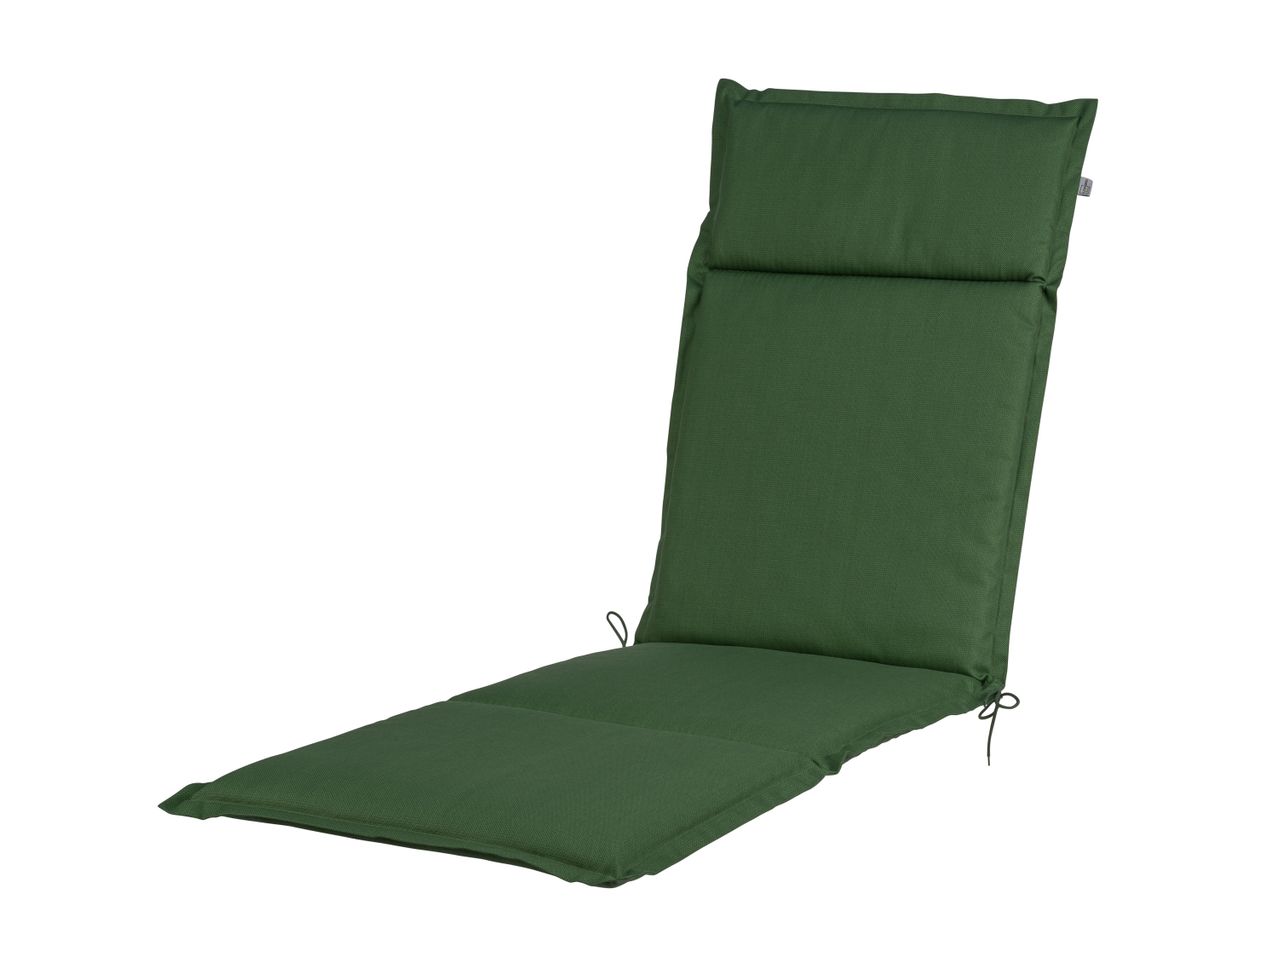 Cuscino per sedia sdraio 167x50 cm , prezzo 14.99 EUR 
Cuscino per sedia sdraio ...